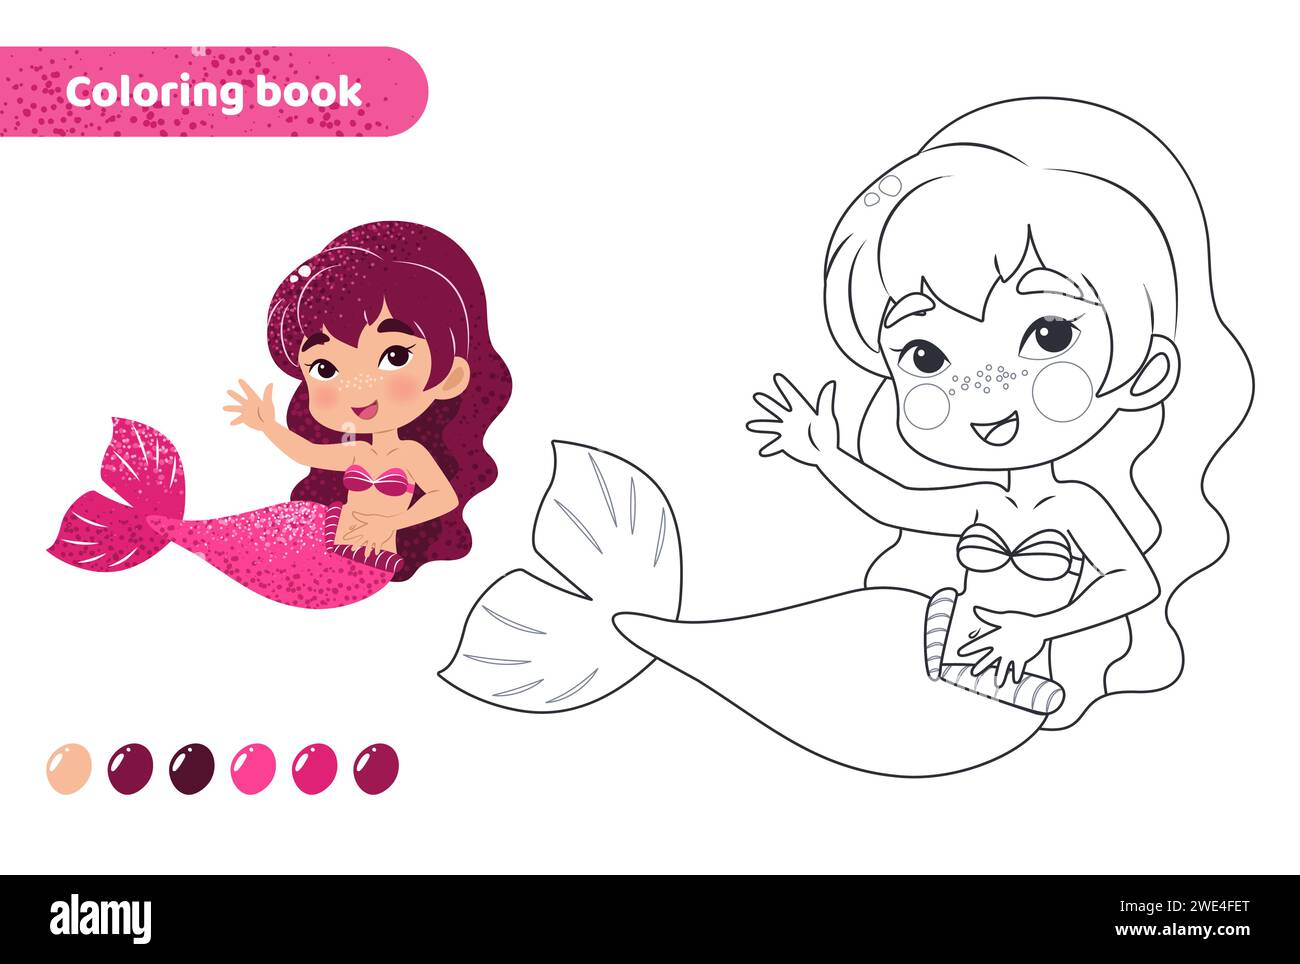 Coloring book for kids. Cute mermaid smiling. Stock Vector